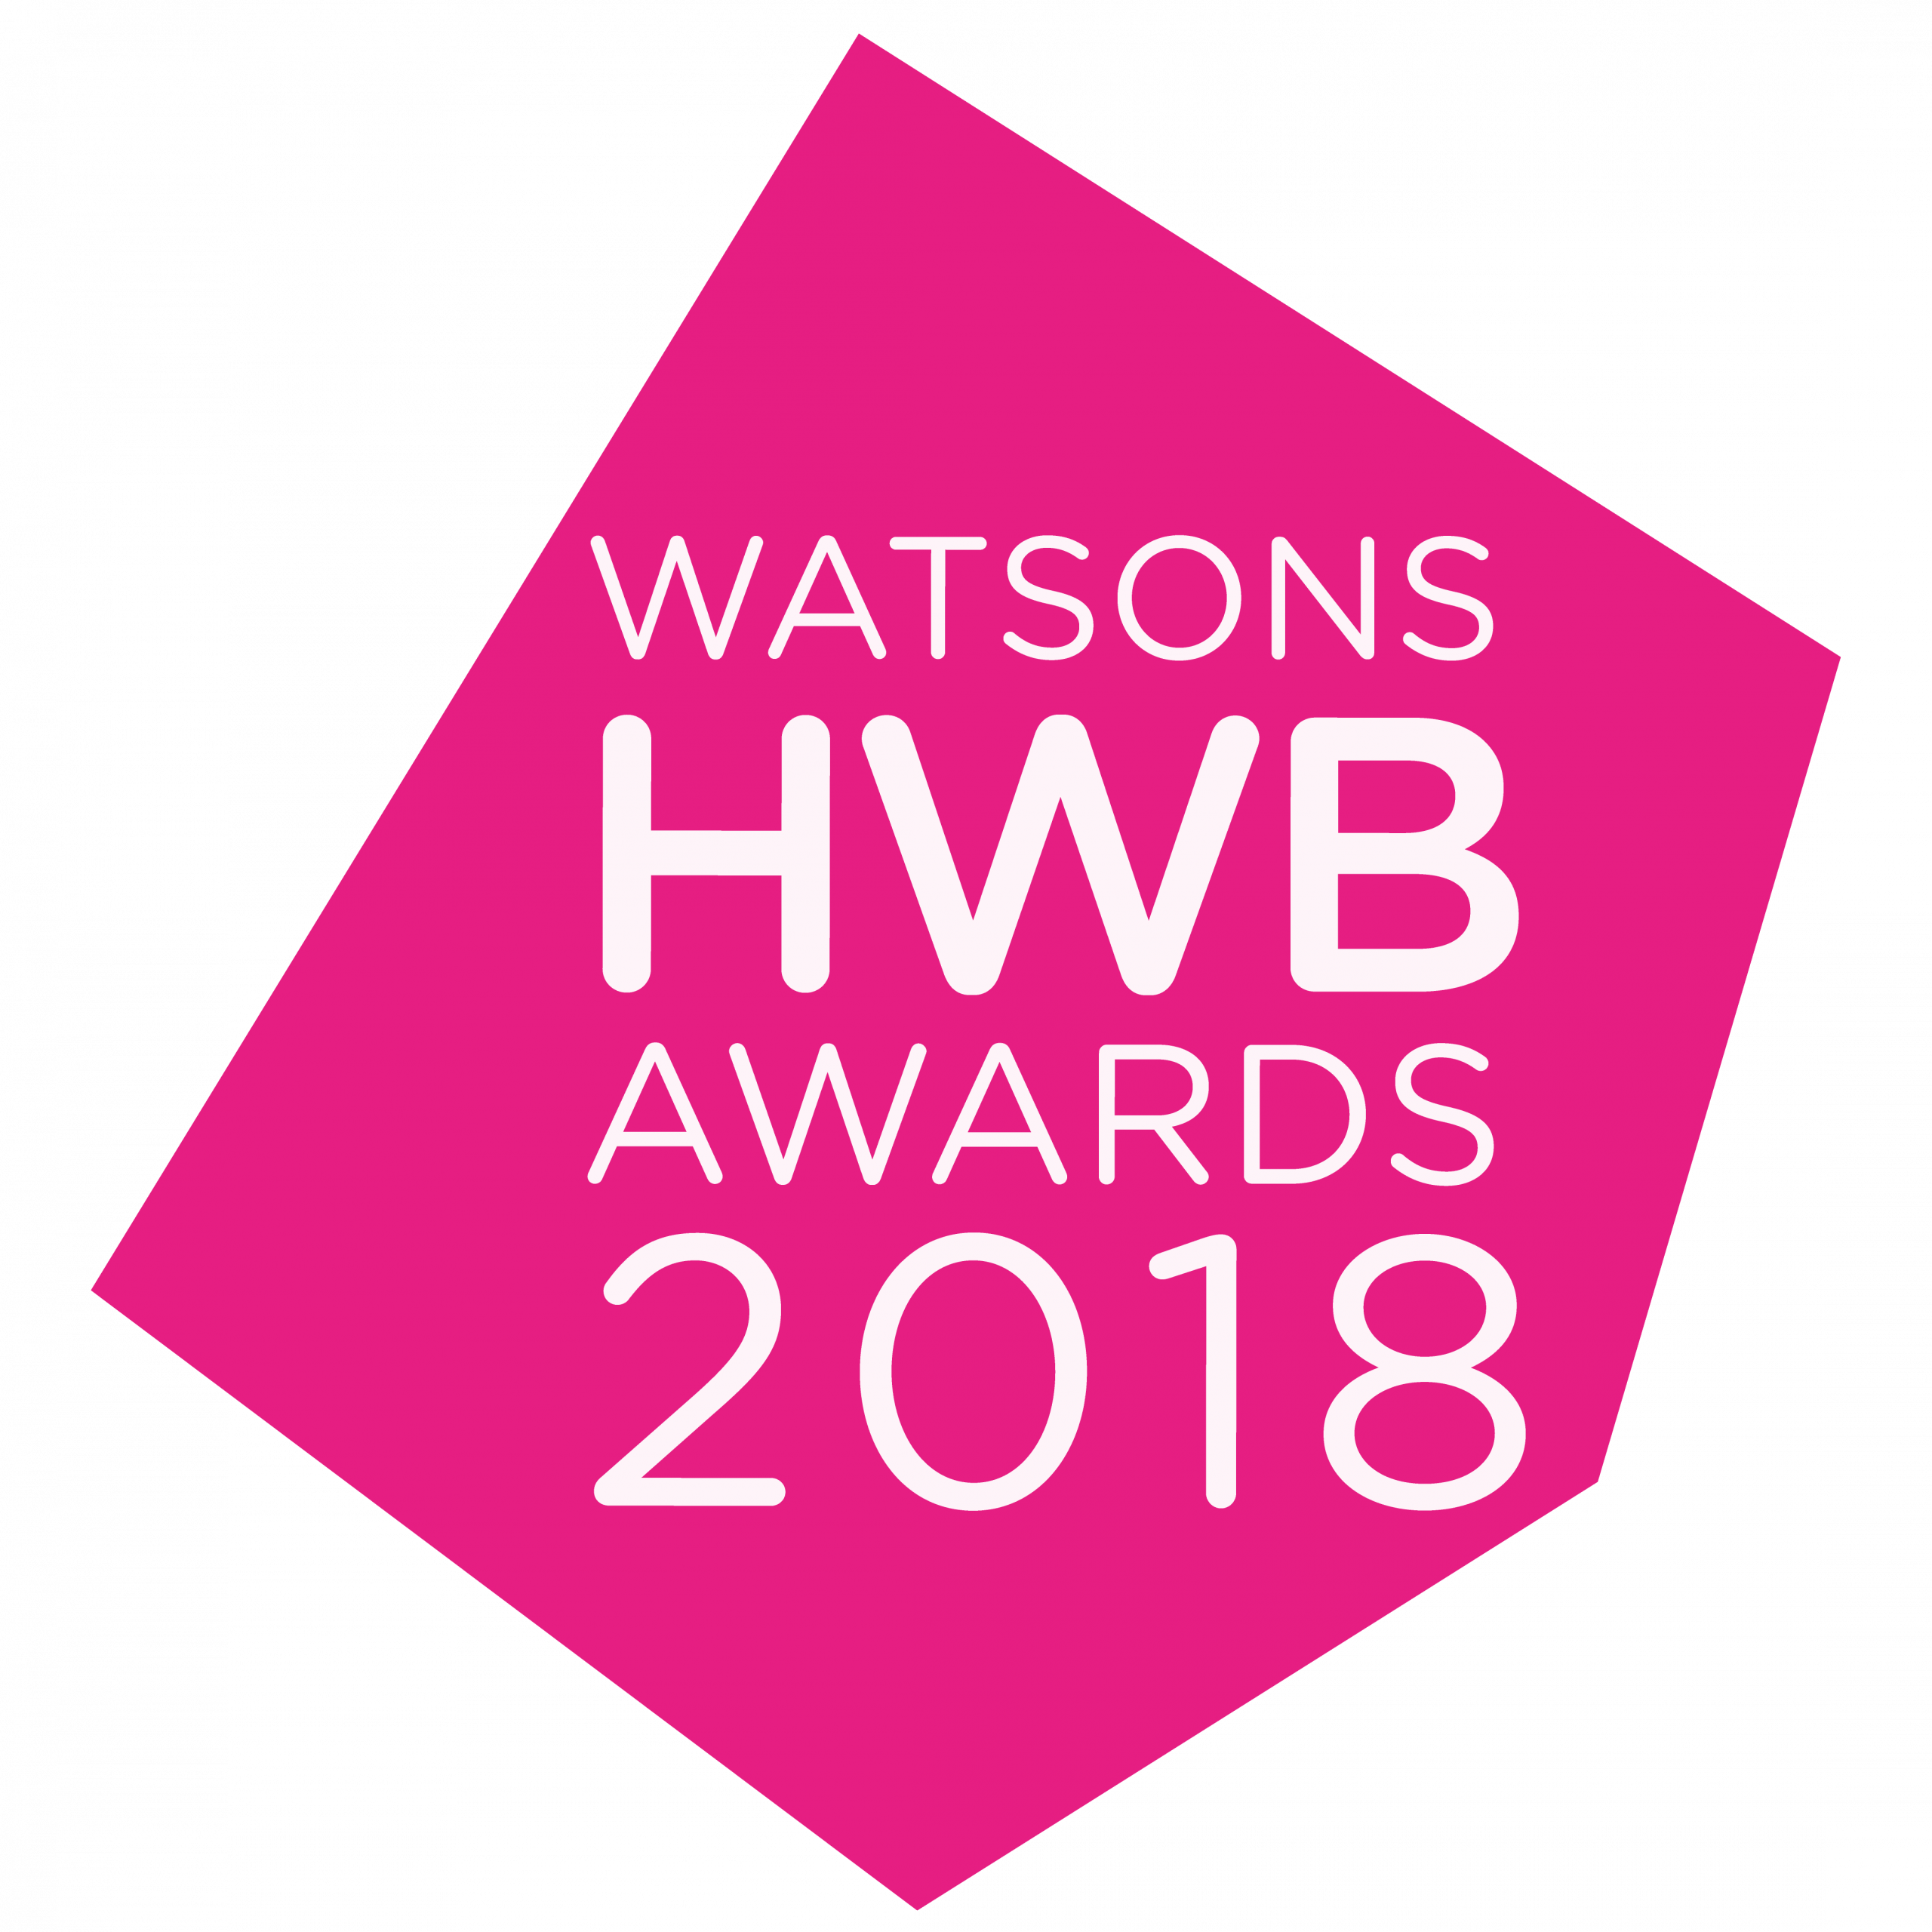 HWB Awards 2018